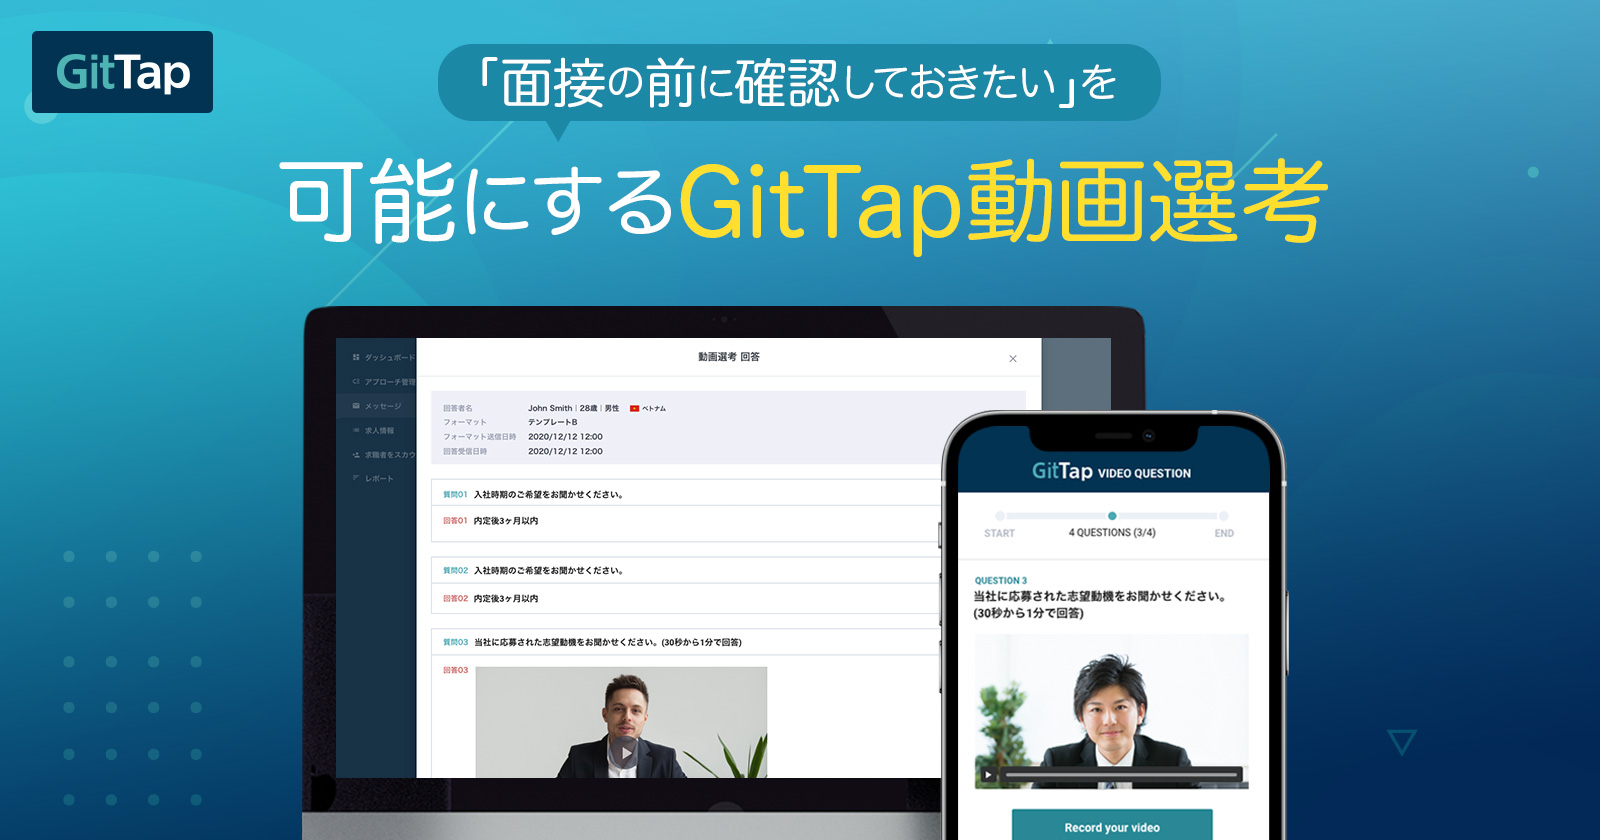 外国人ITエンジニアの採用マッチングサイト「GitTap」、動画選考機能を提供開始 〜withコロナ時代のDXを実現する、優秀なグローバルIT人材の「攻めの採用」を加速～